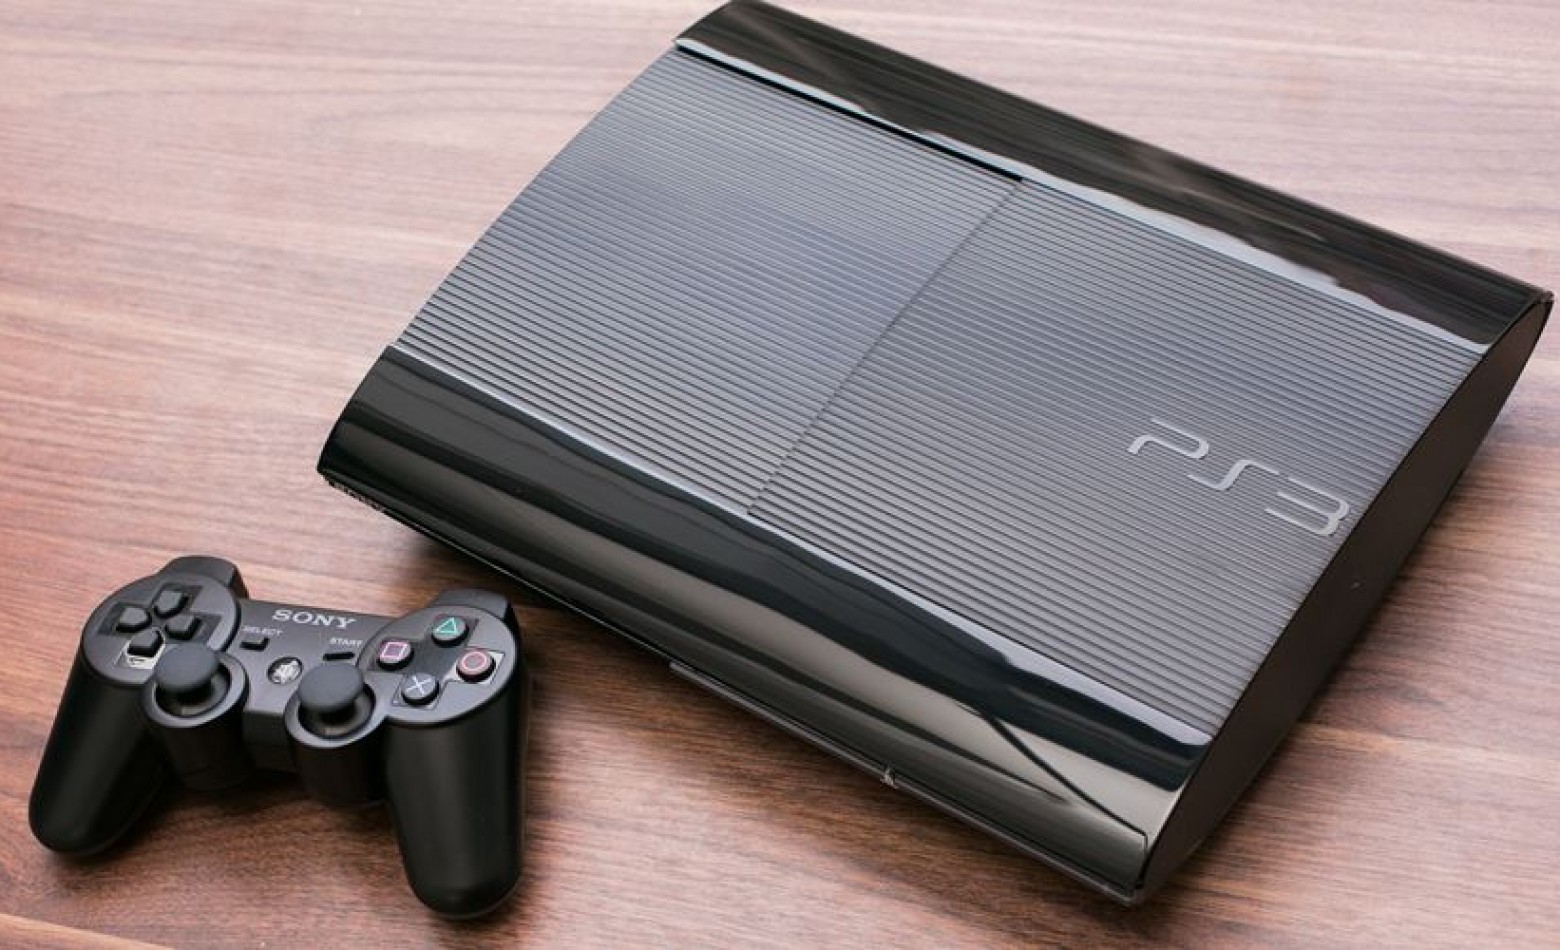 Documentos podem indicar mudanças de hardware no PS3 e PS4